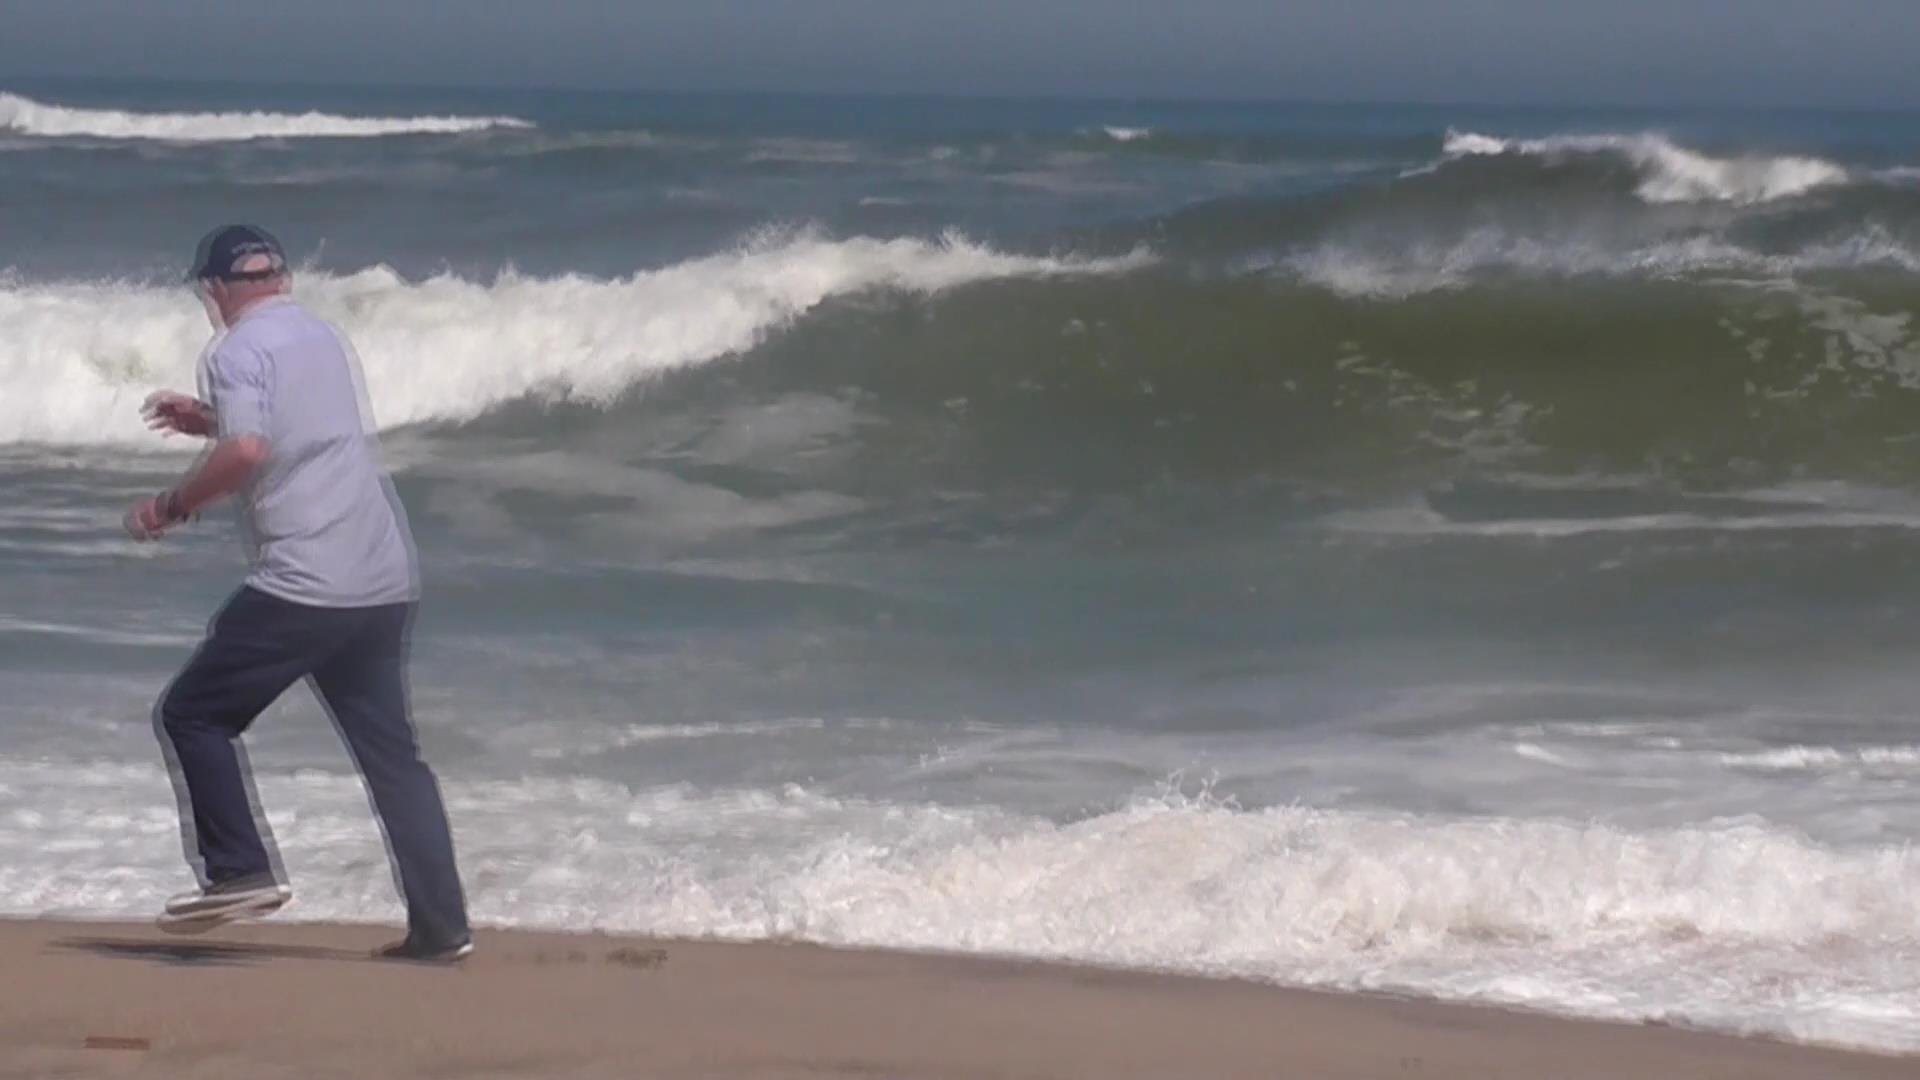 Swakopmund - challenging the waves (2. David) - YouTube